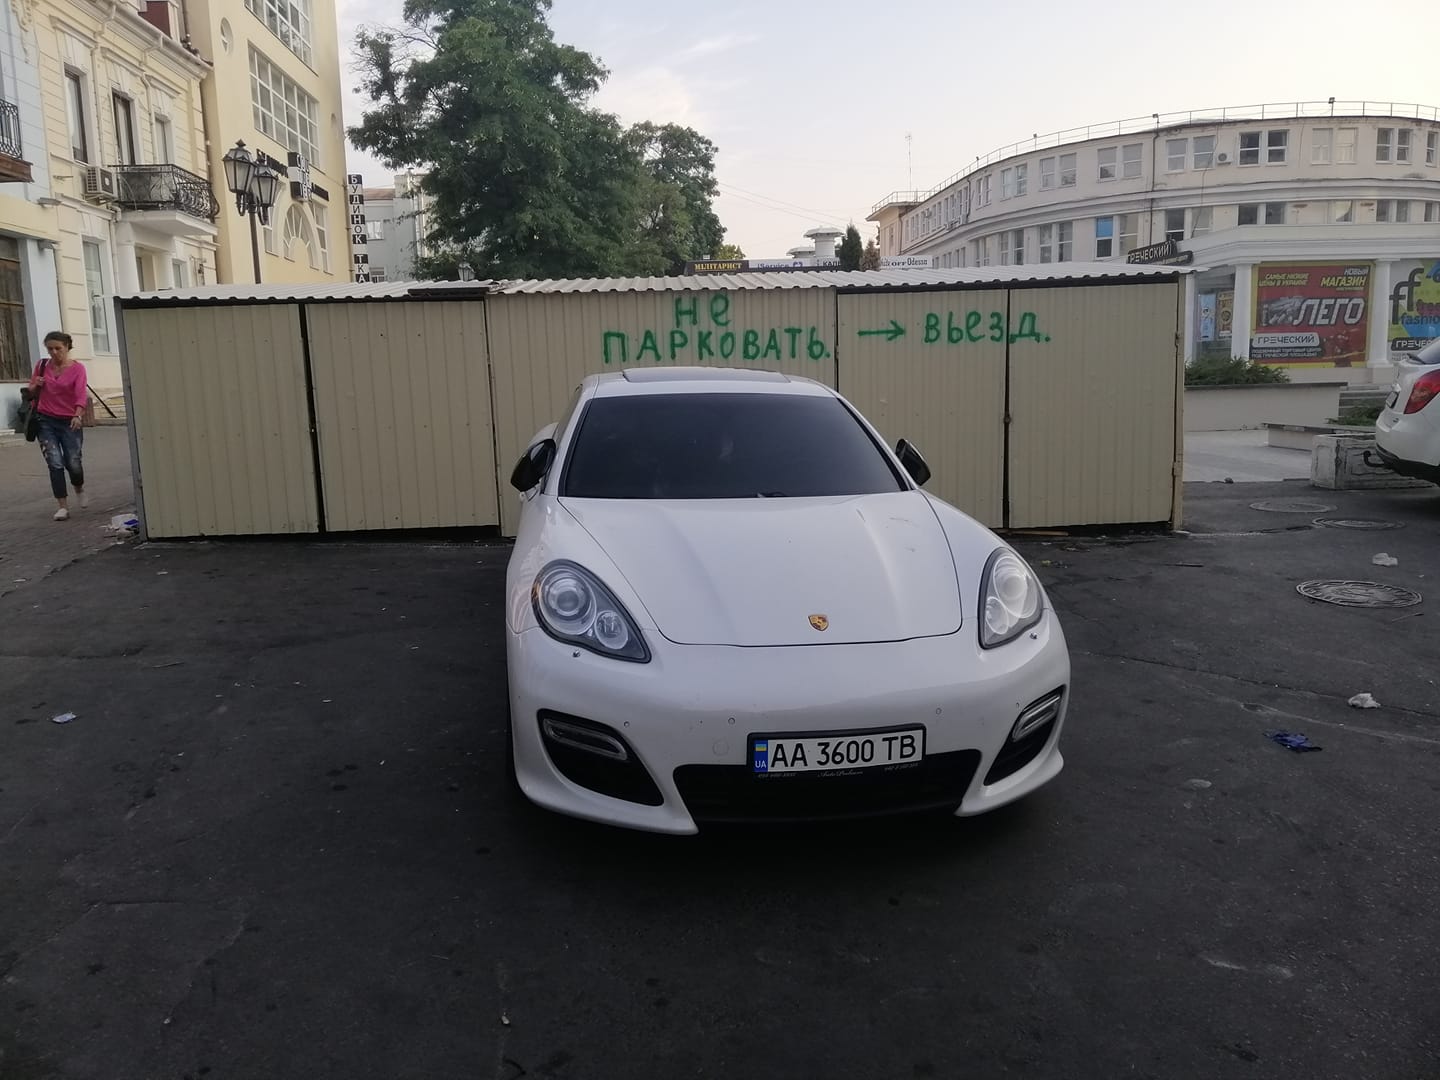 Подборка автохамов Одессы за вторую неделю августа 2019 года